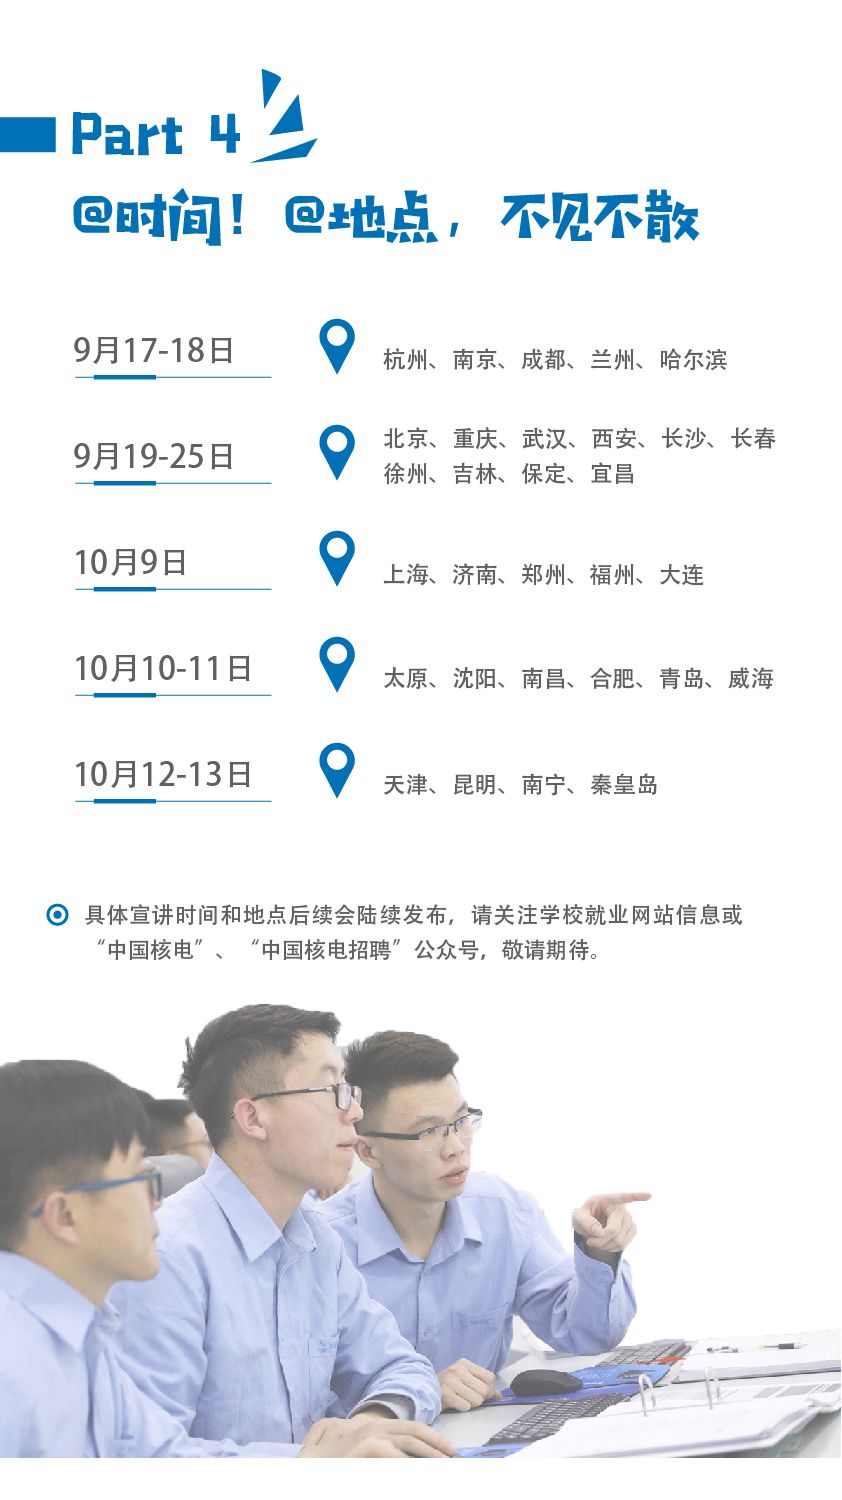 核电 招聘_第八届中国核电信息技术高峰论坛于8月5日 6日在上海成功举办